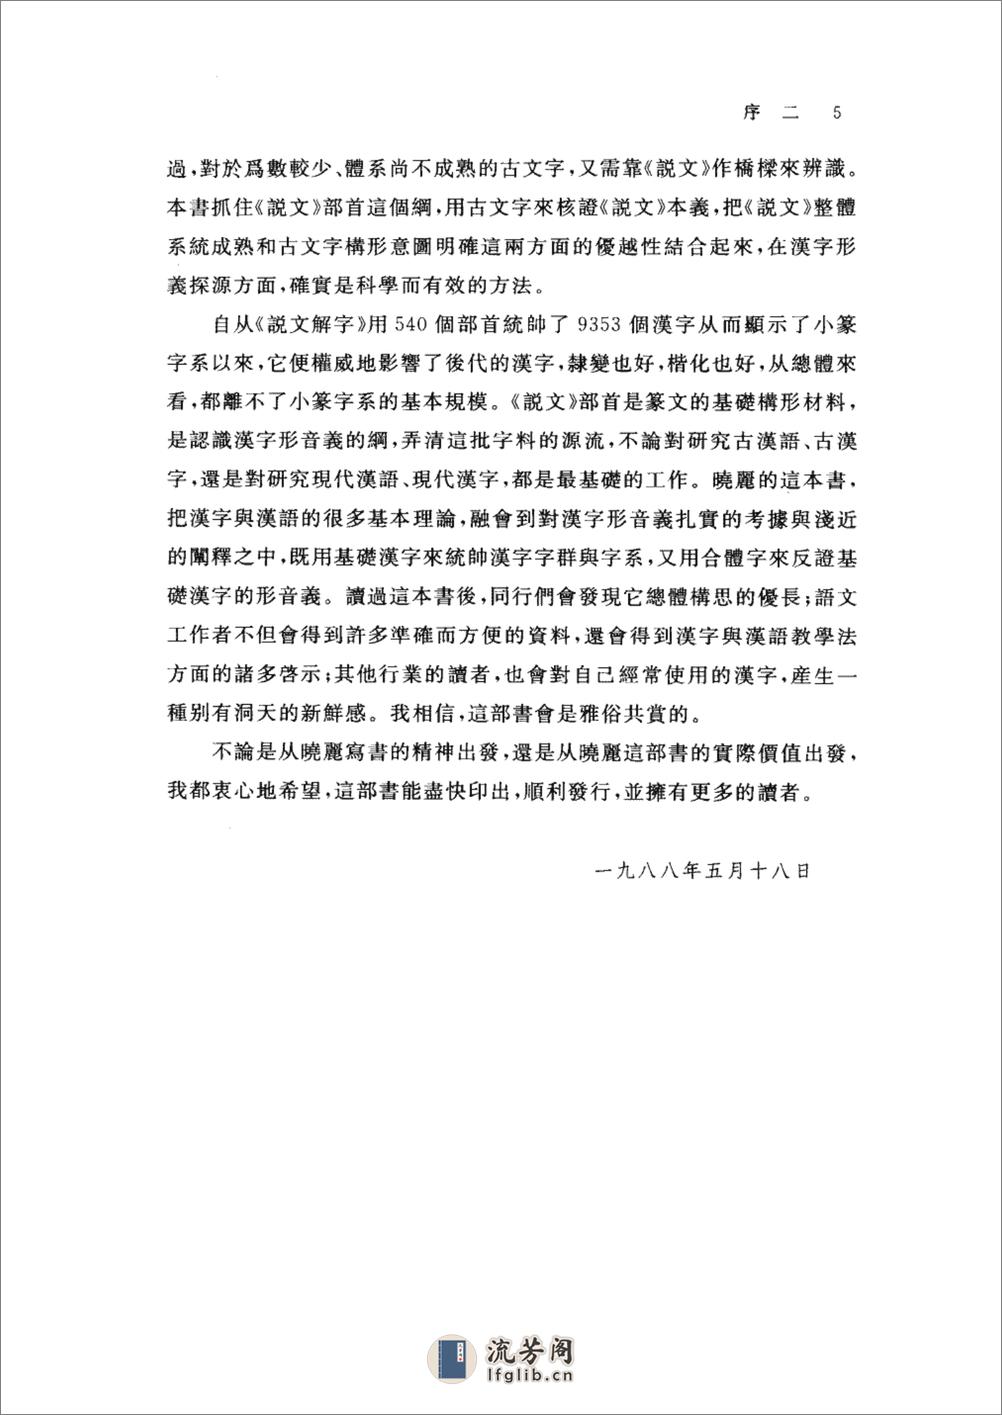 基础汉字形义释源 - 第14页预览图